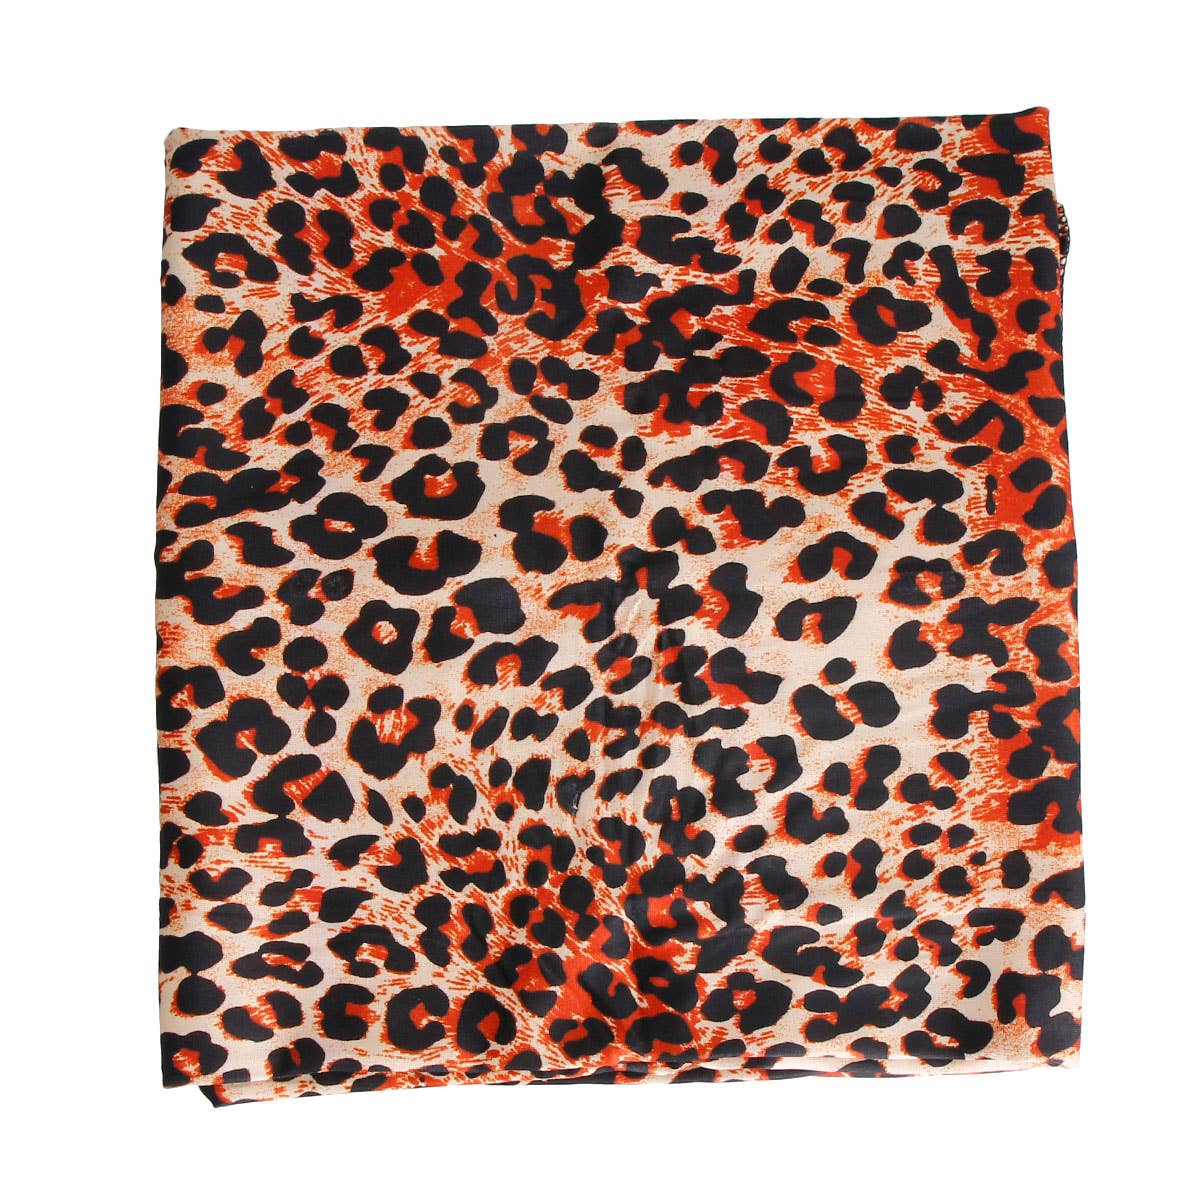 Leopard Print Head Wrap: Color / 60 x 20 inches / Multi Tone